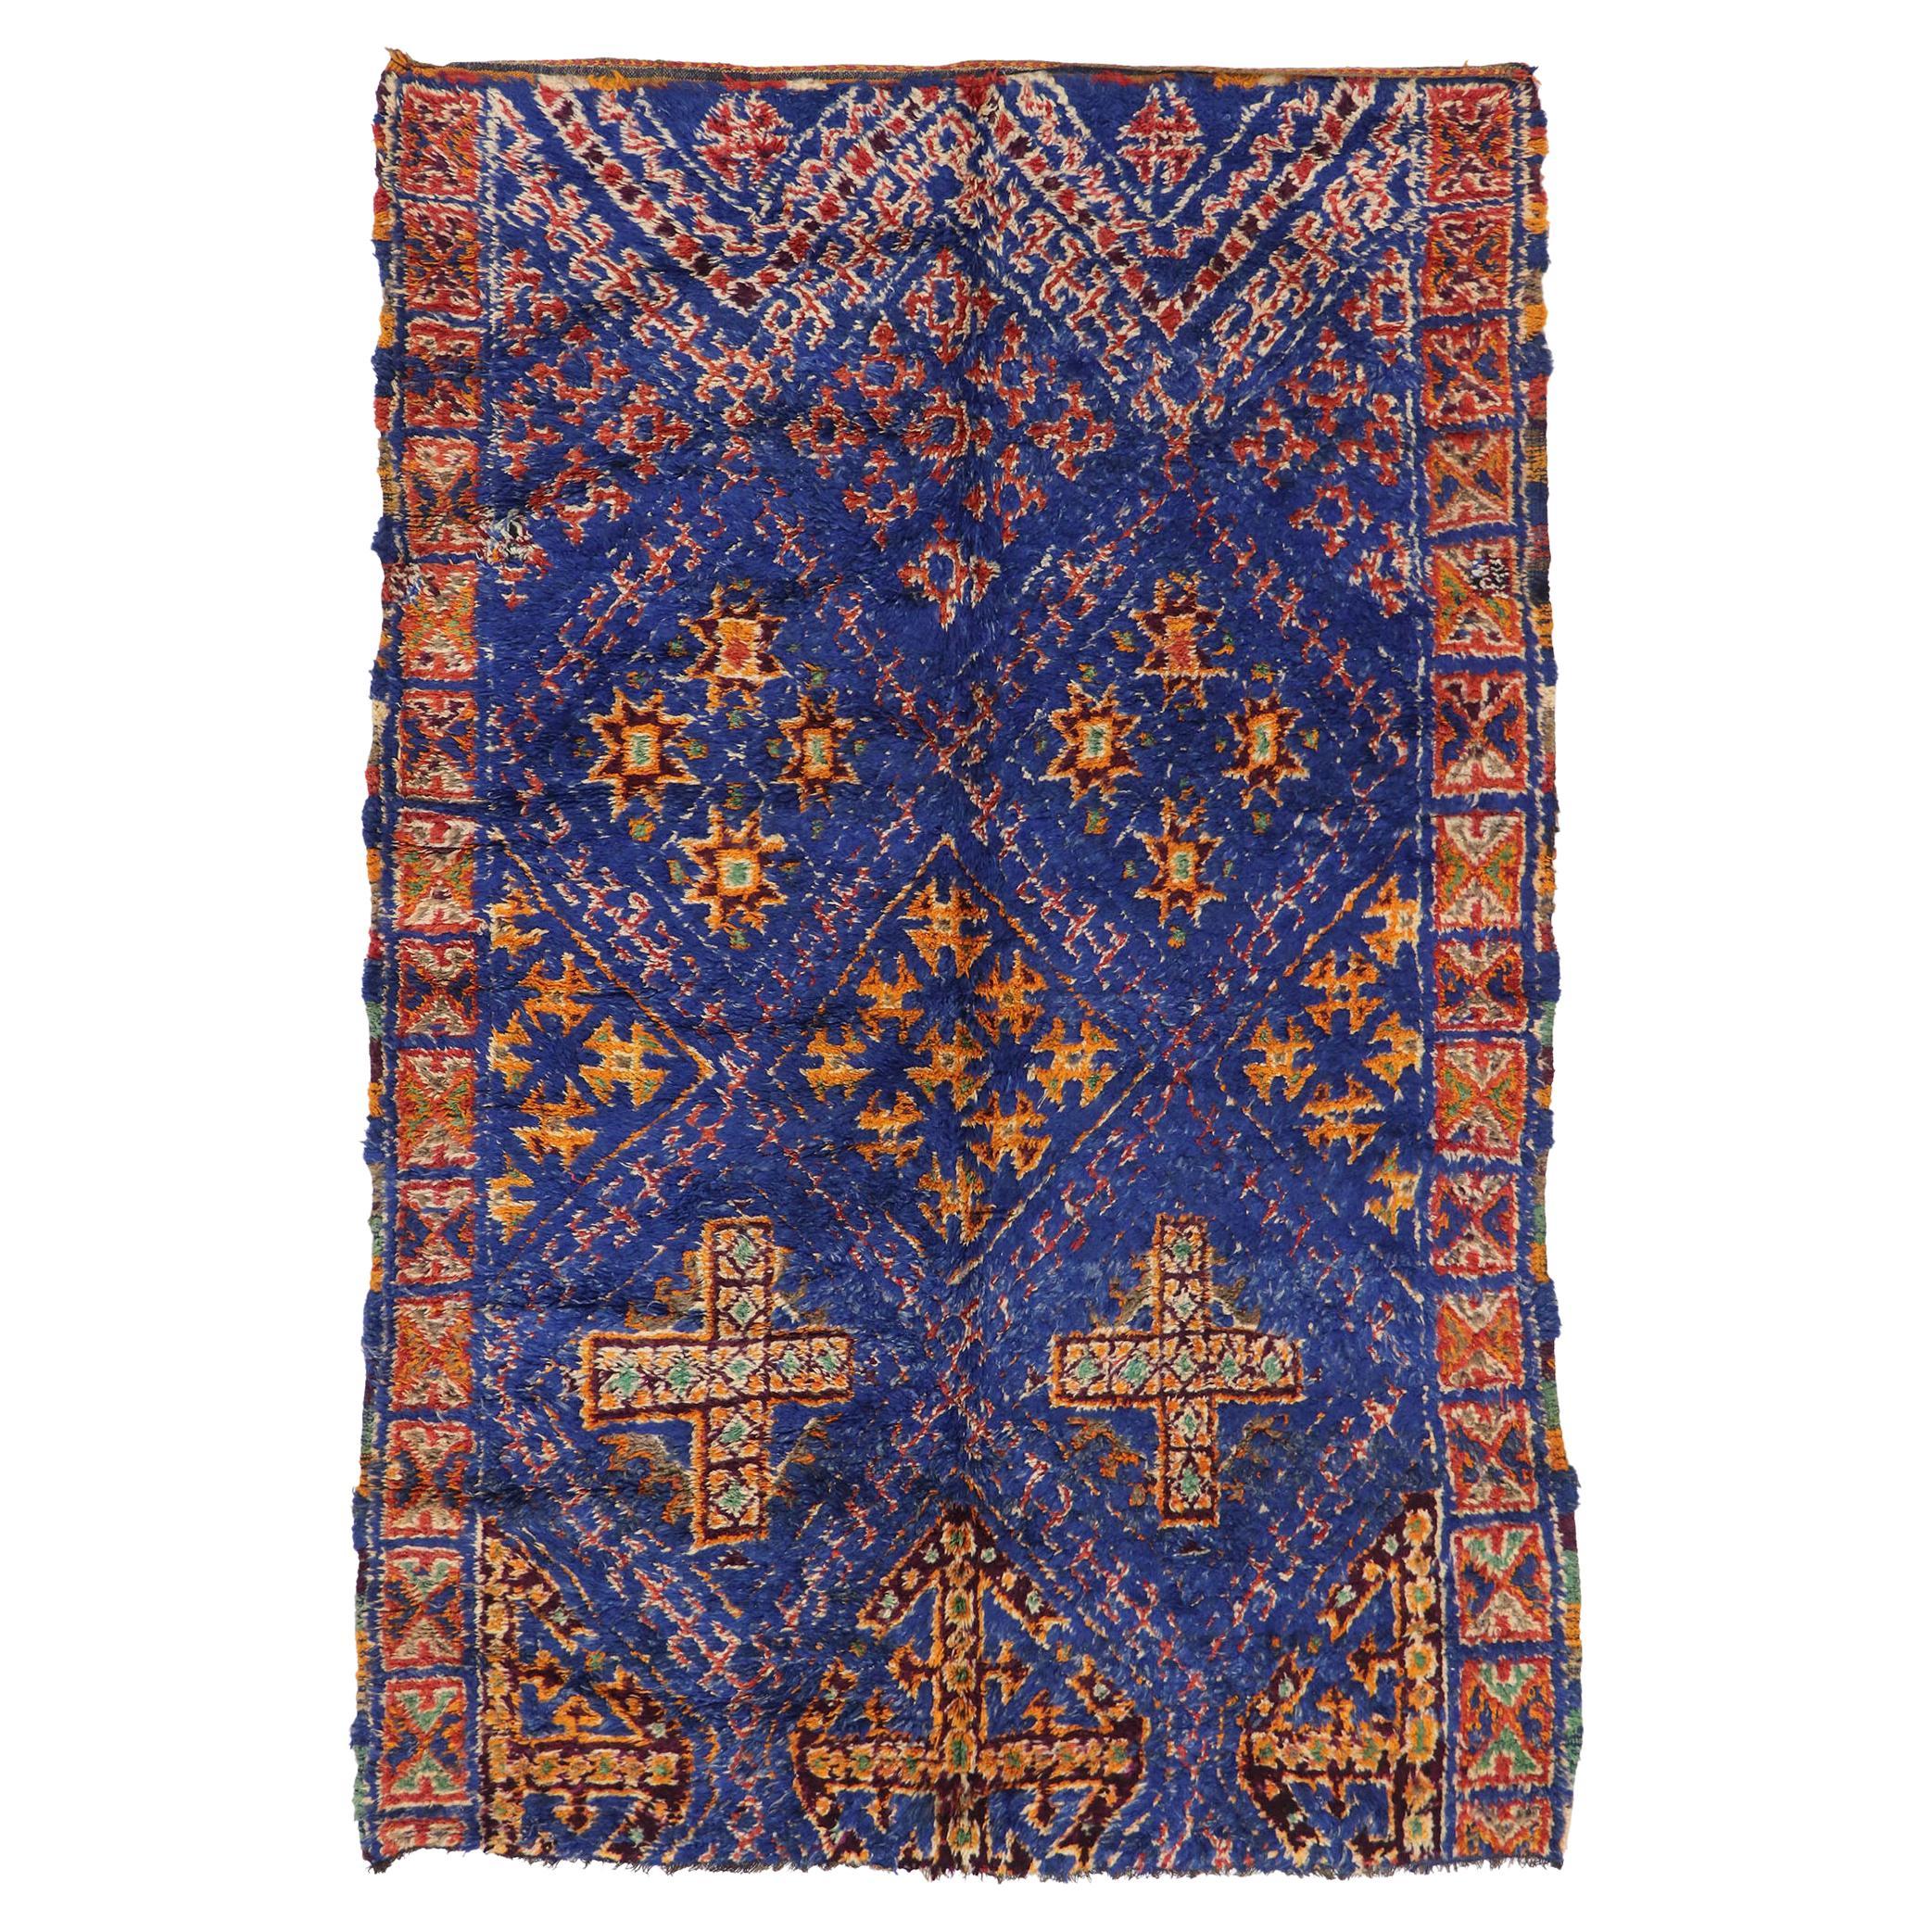 Tapis marocain vintage bleu de la guilde Beni M'guild avec style tribal